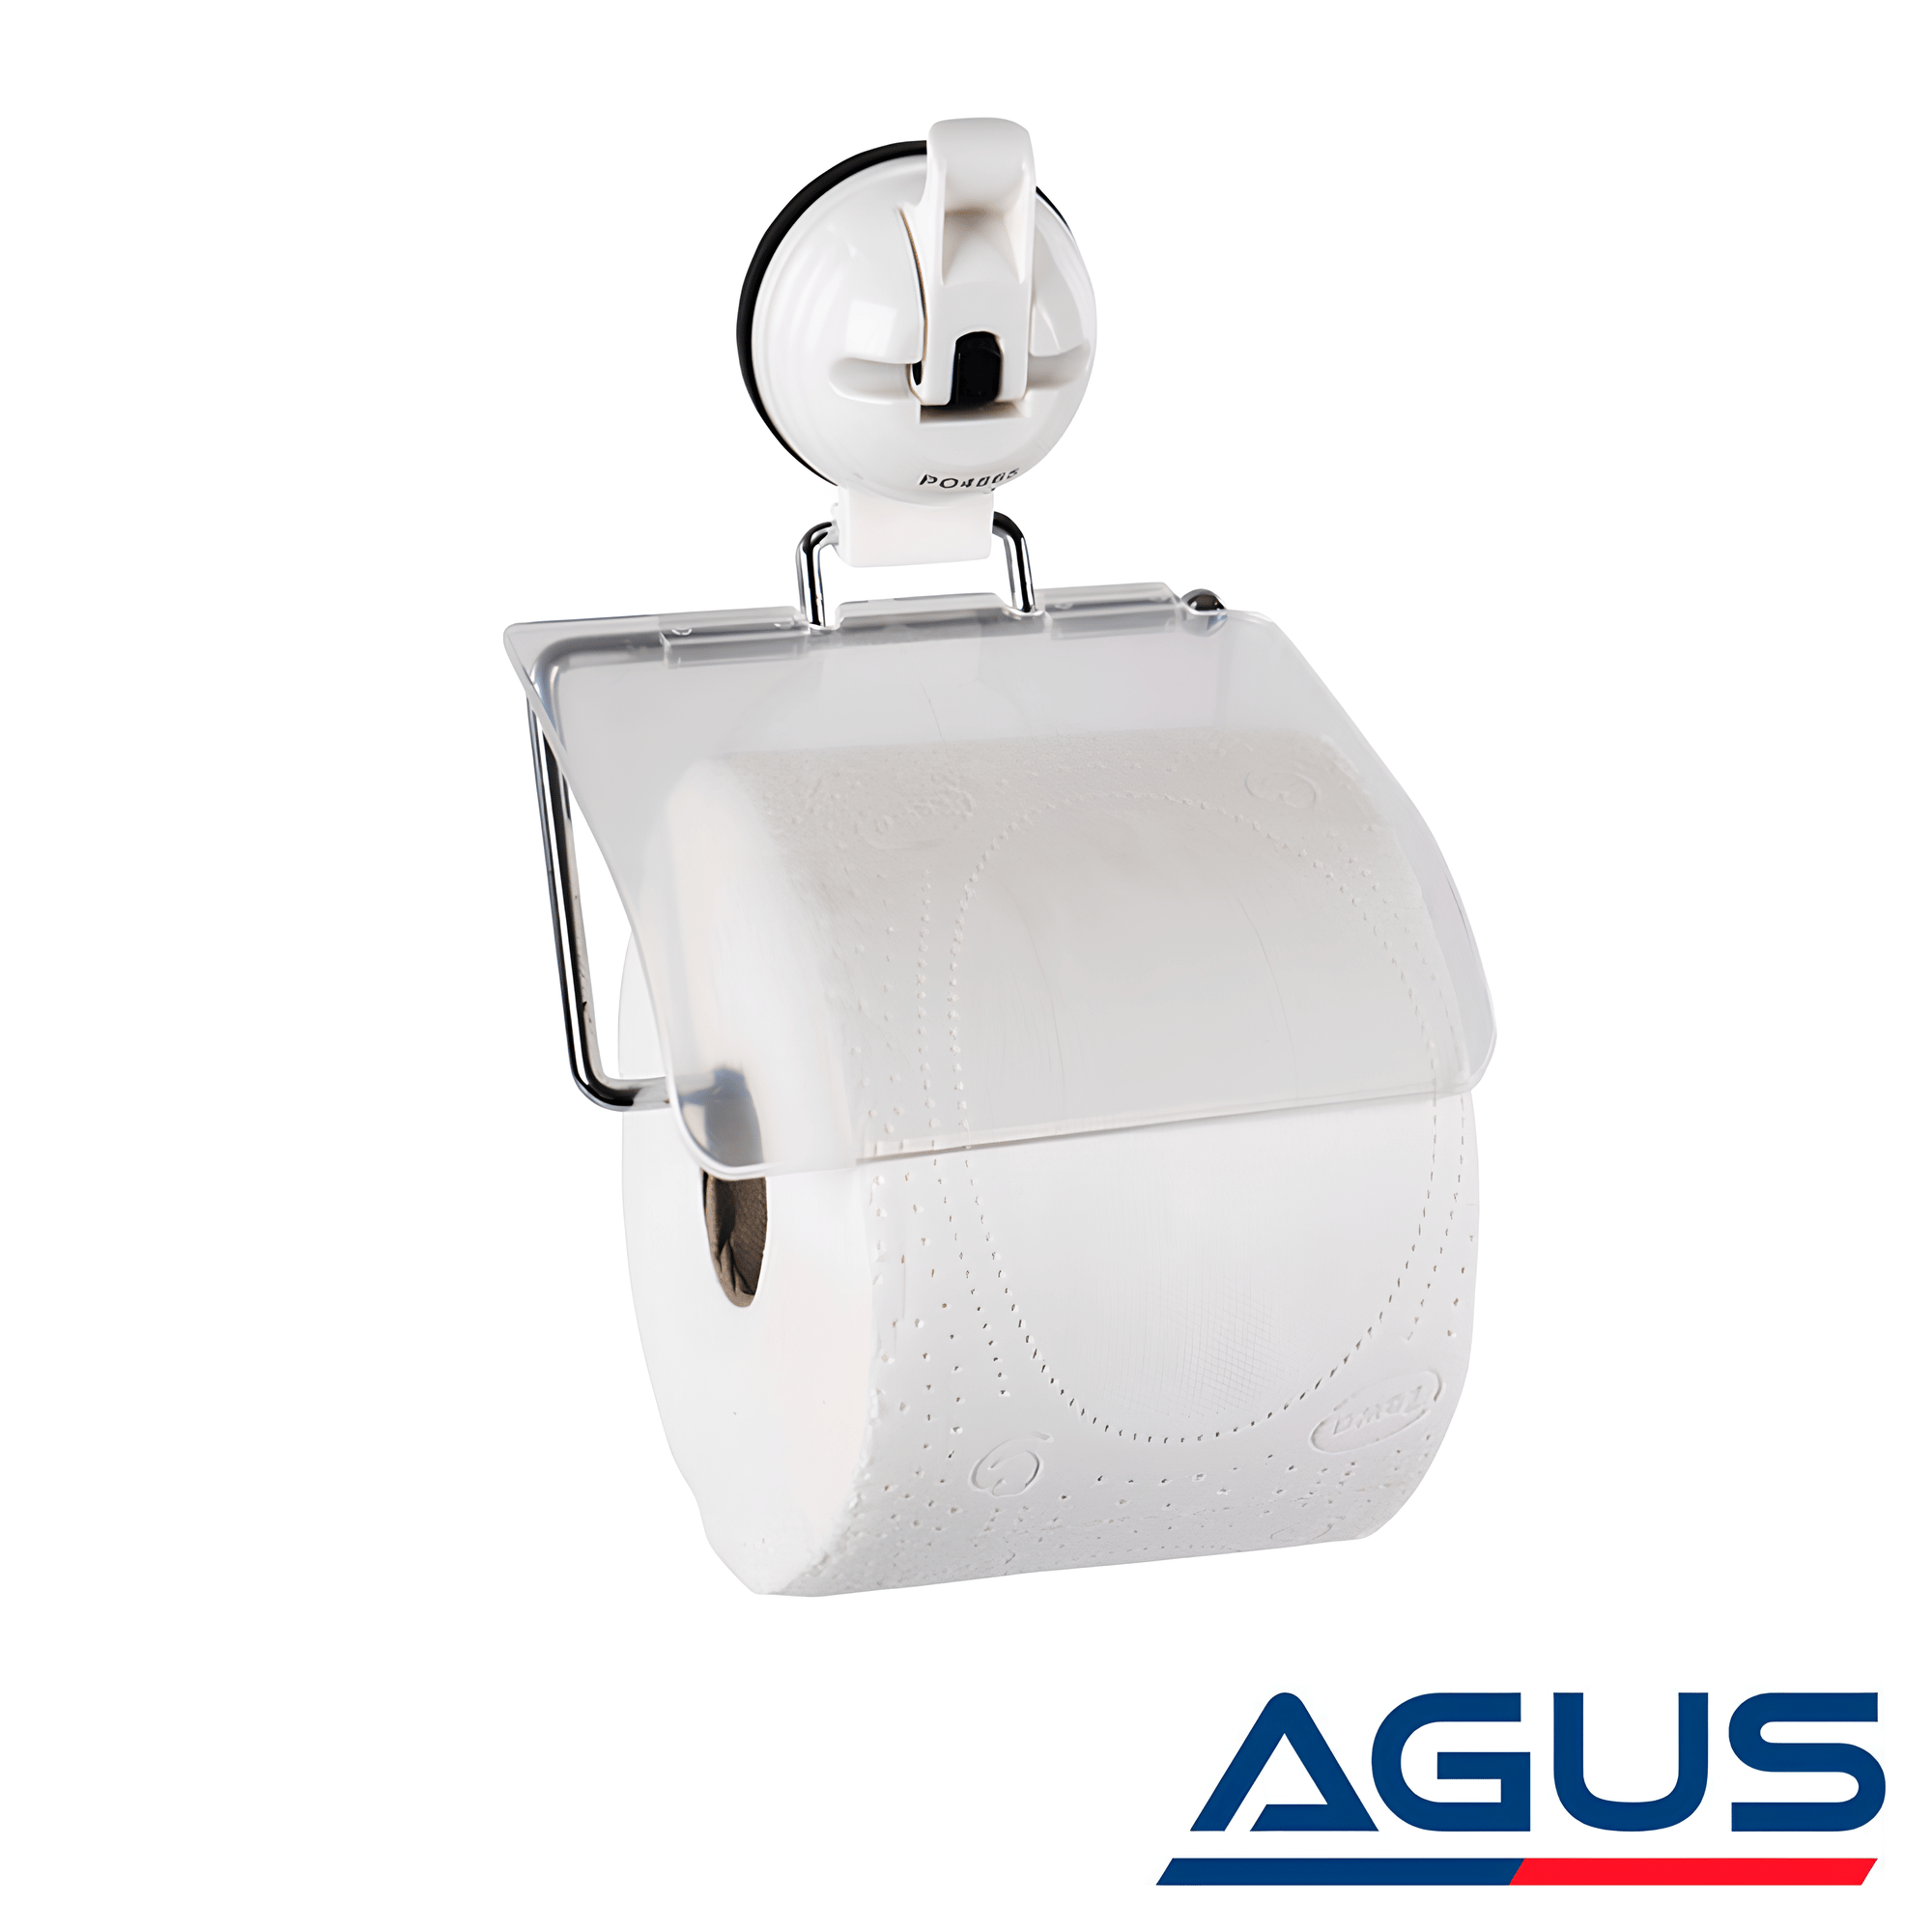 Suga Vantuzlu Karavan Tuvalet Kağıtlığı | AGUS